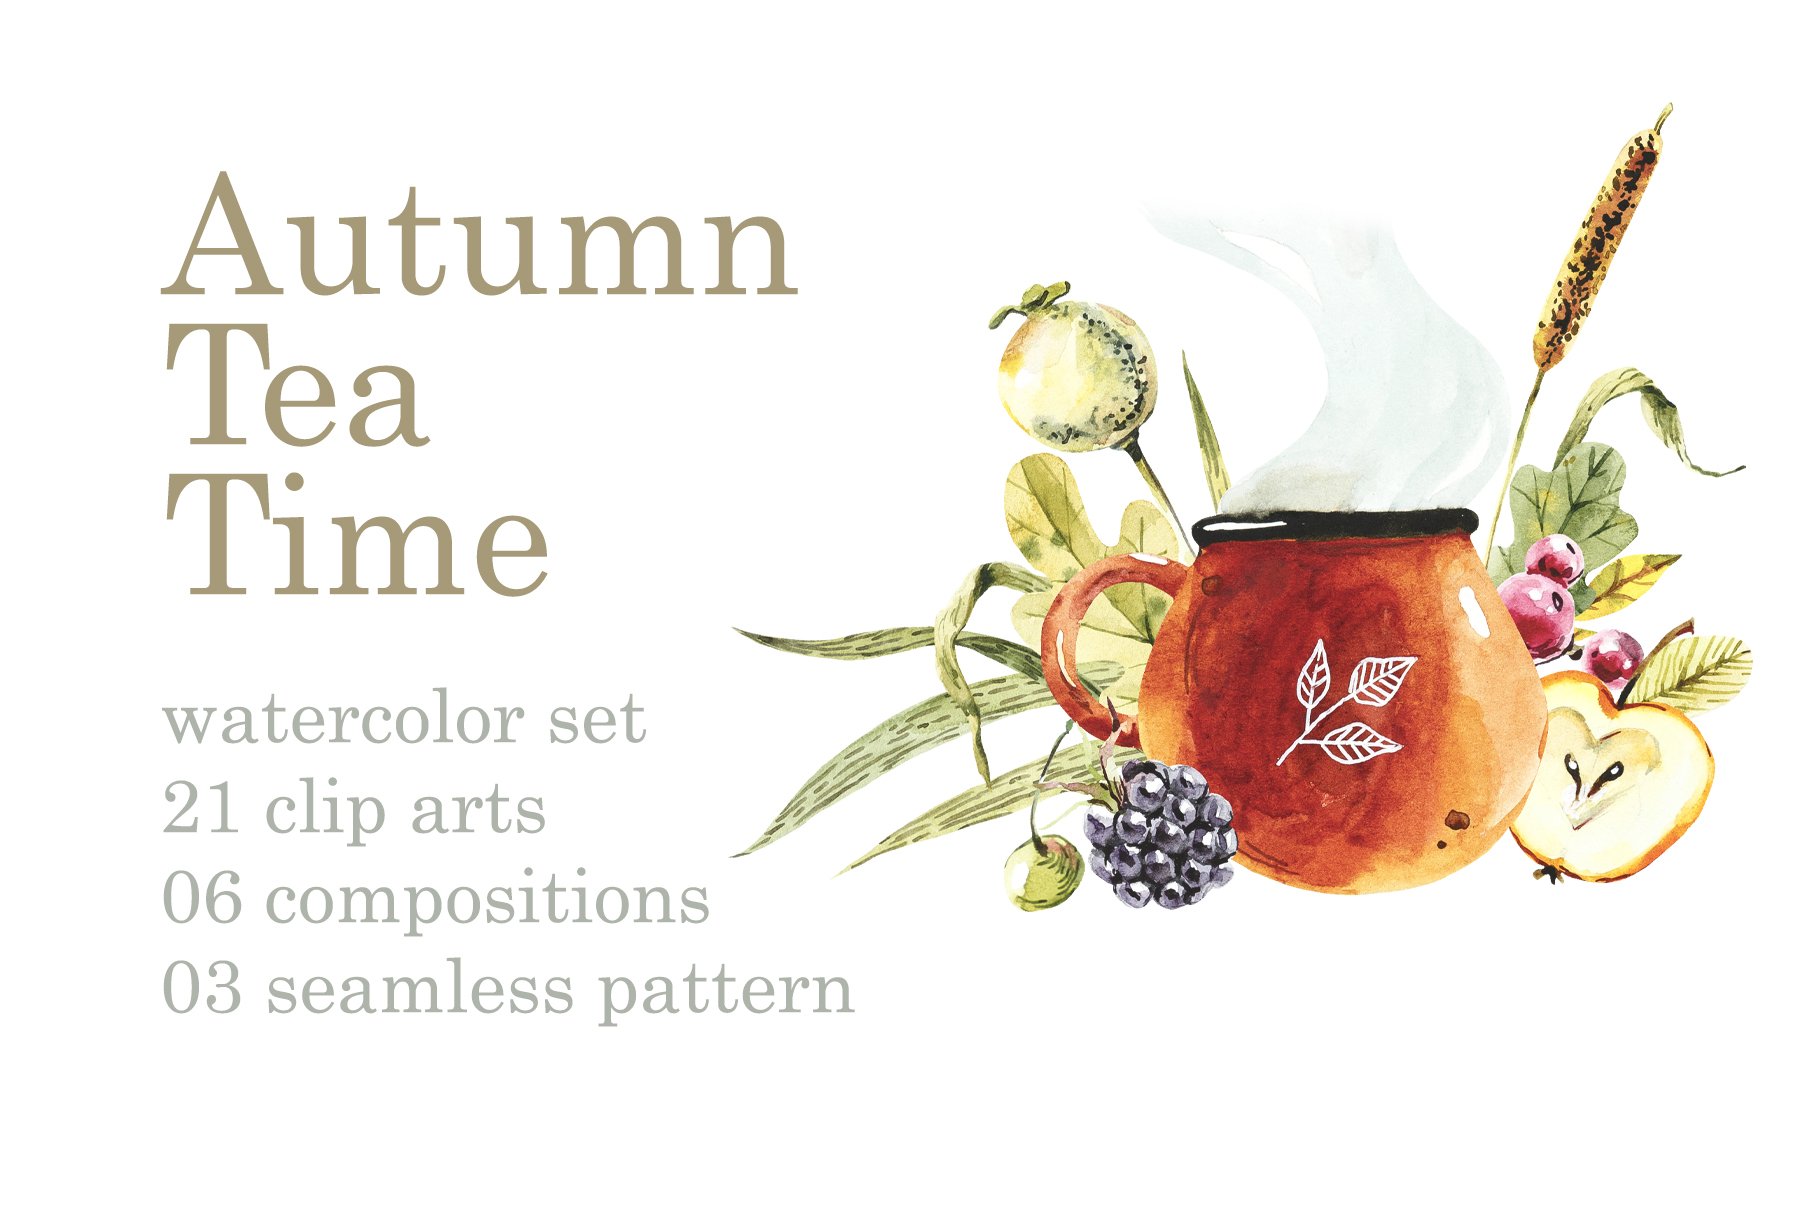 Autumn Tea Time cover image.